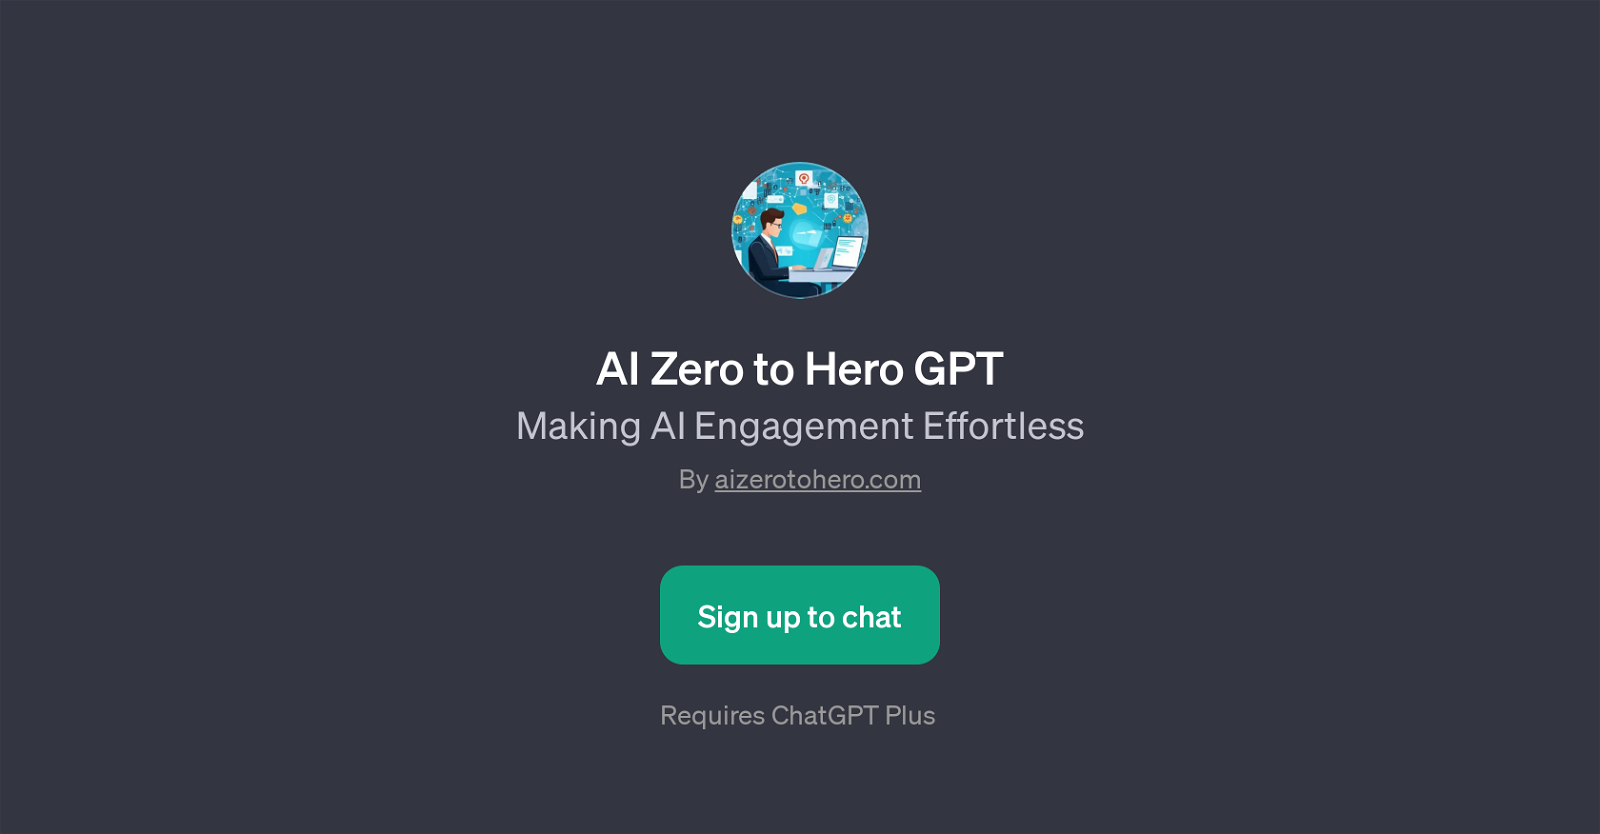 AI Zero to Hero GPT website